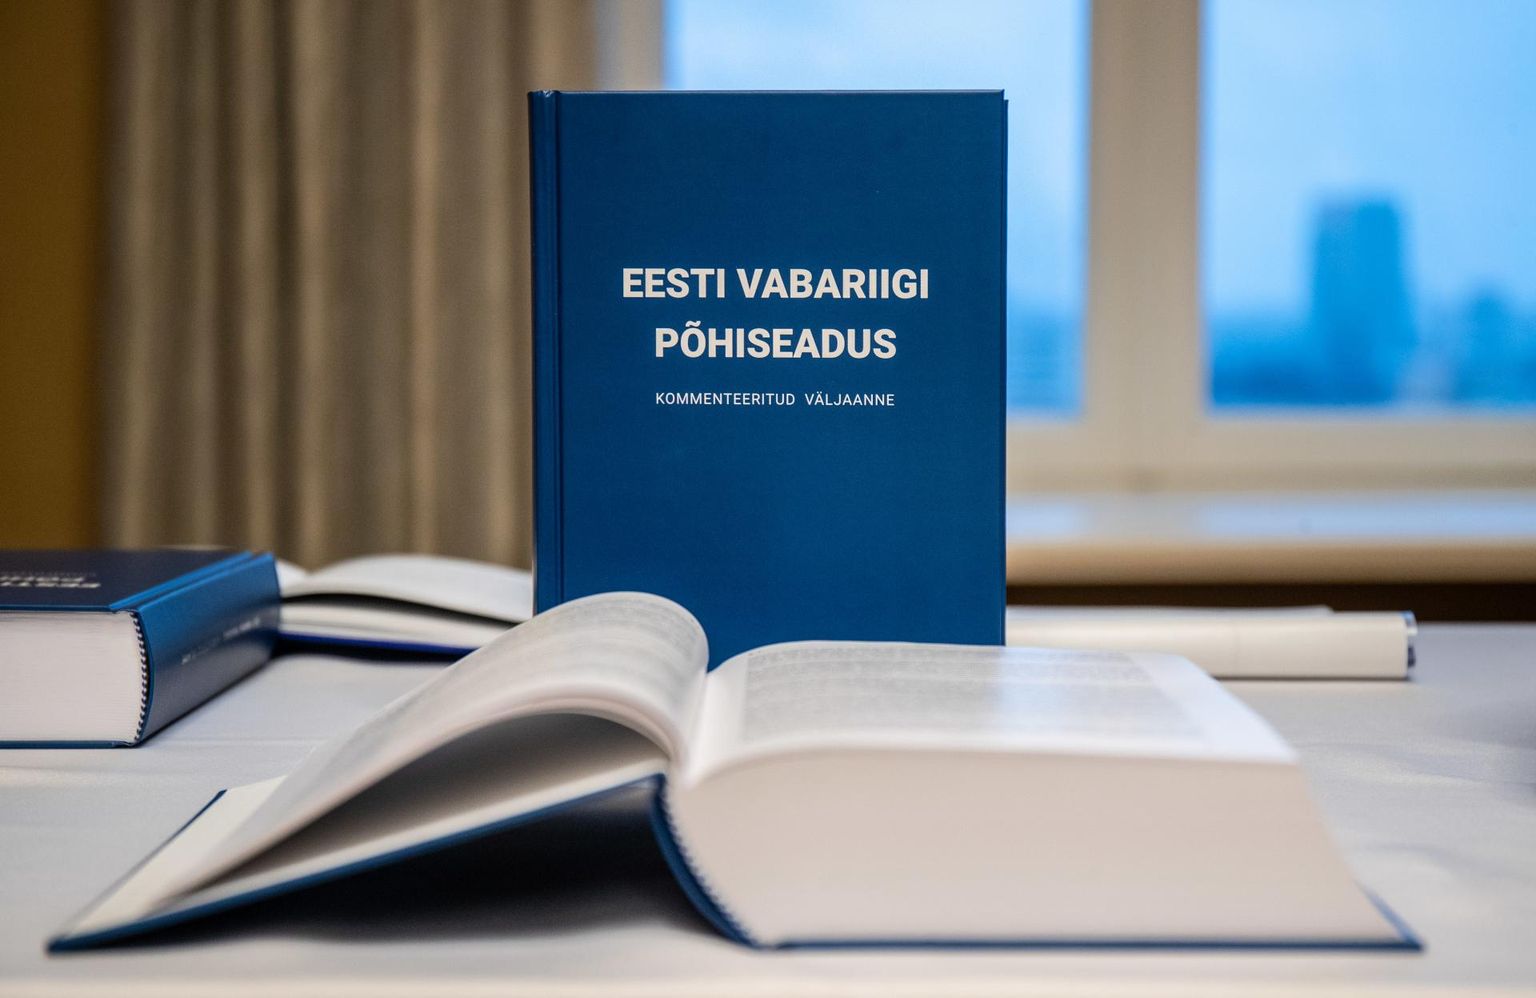 Eesti vabariigi põhiseaduse kommenteeritud väljaanne.